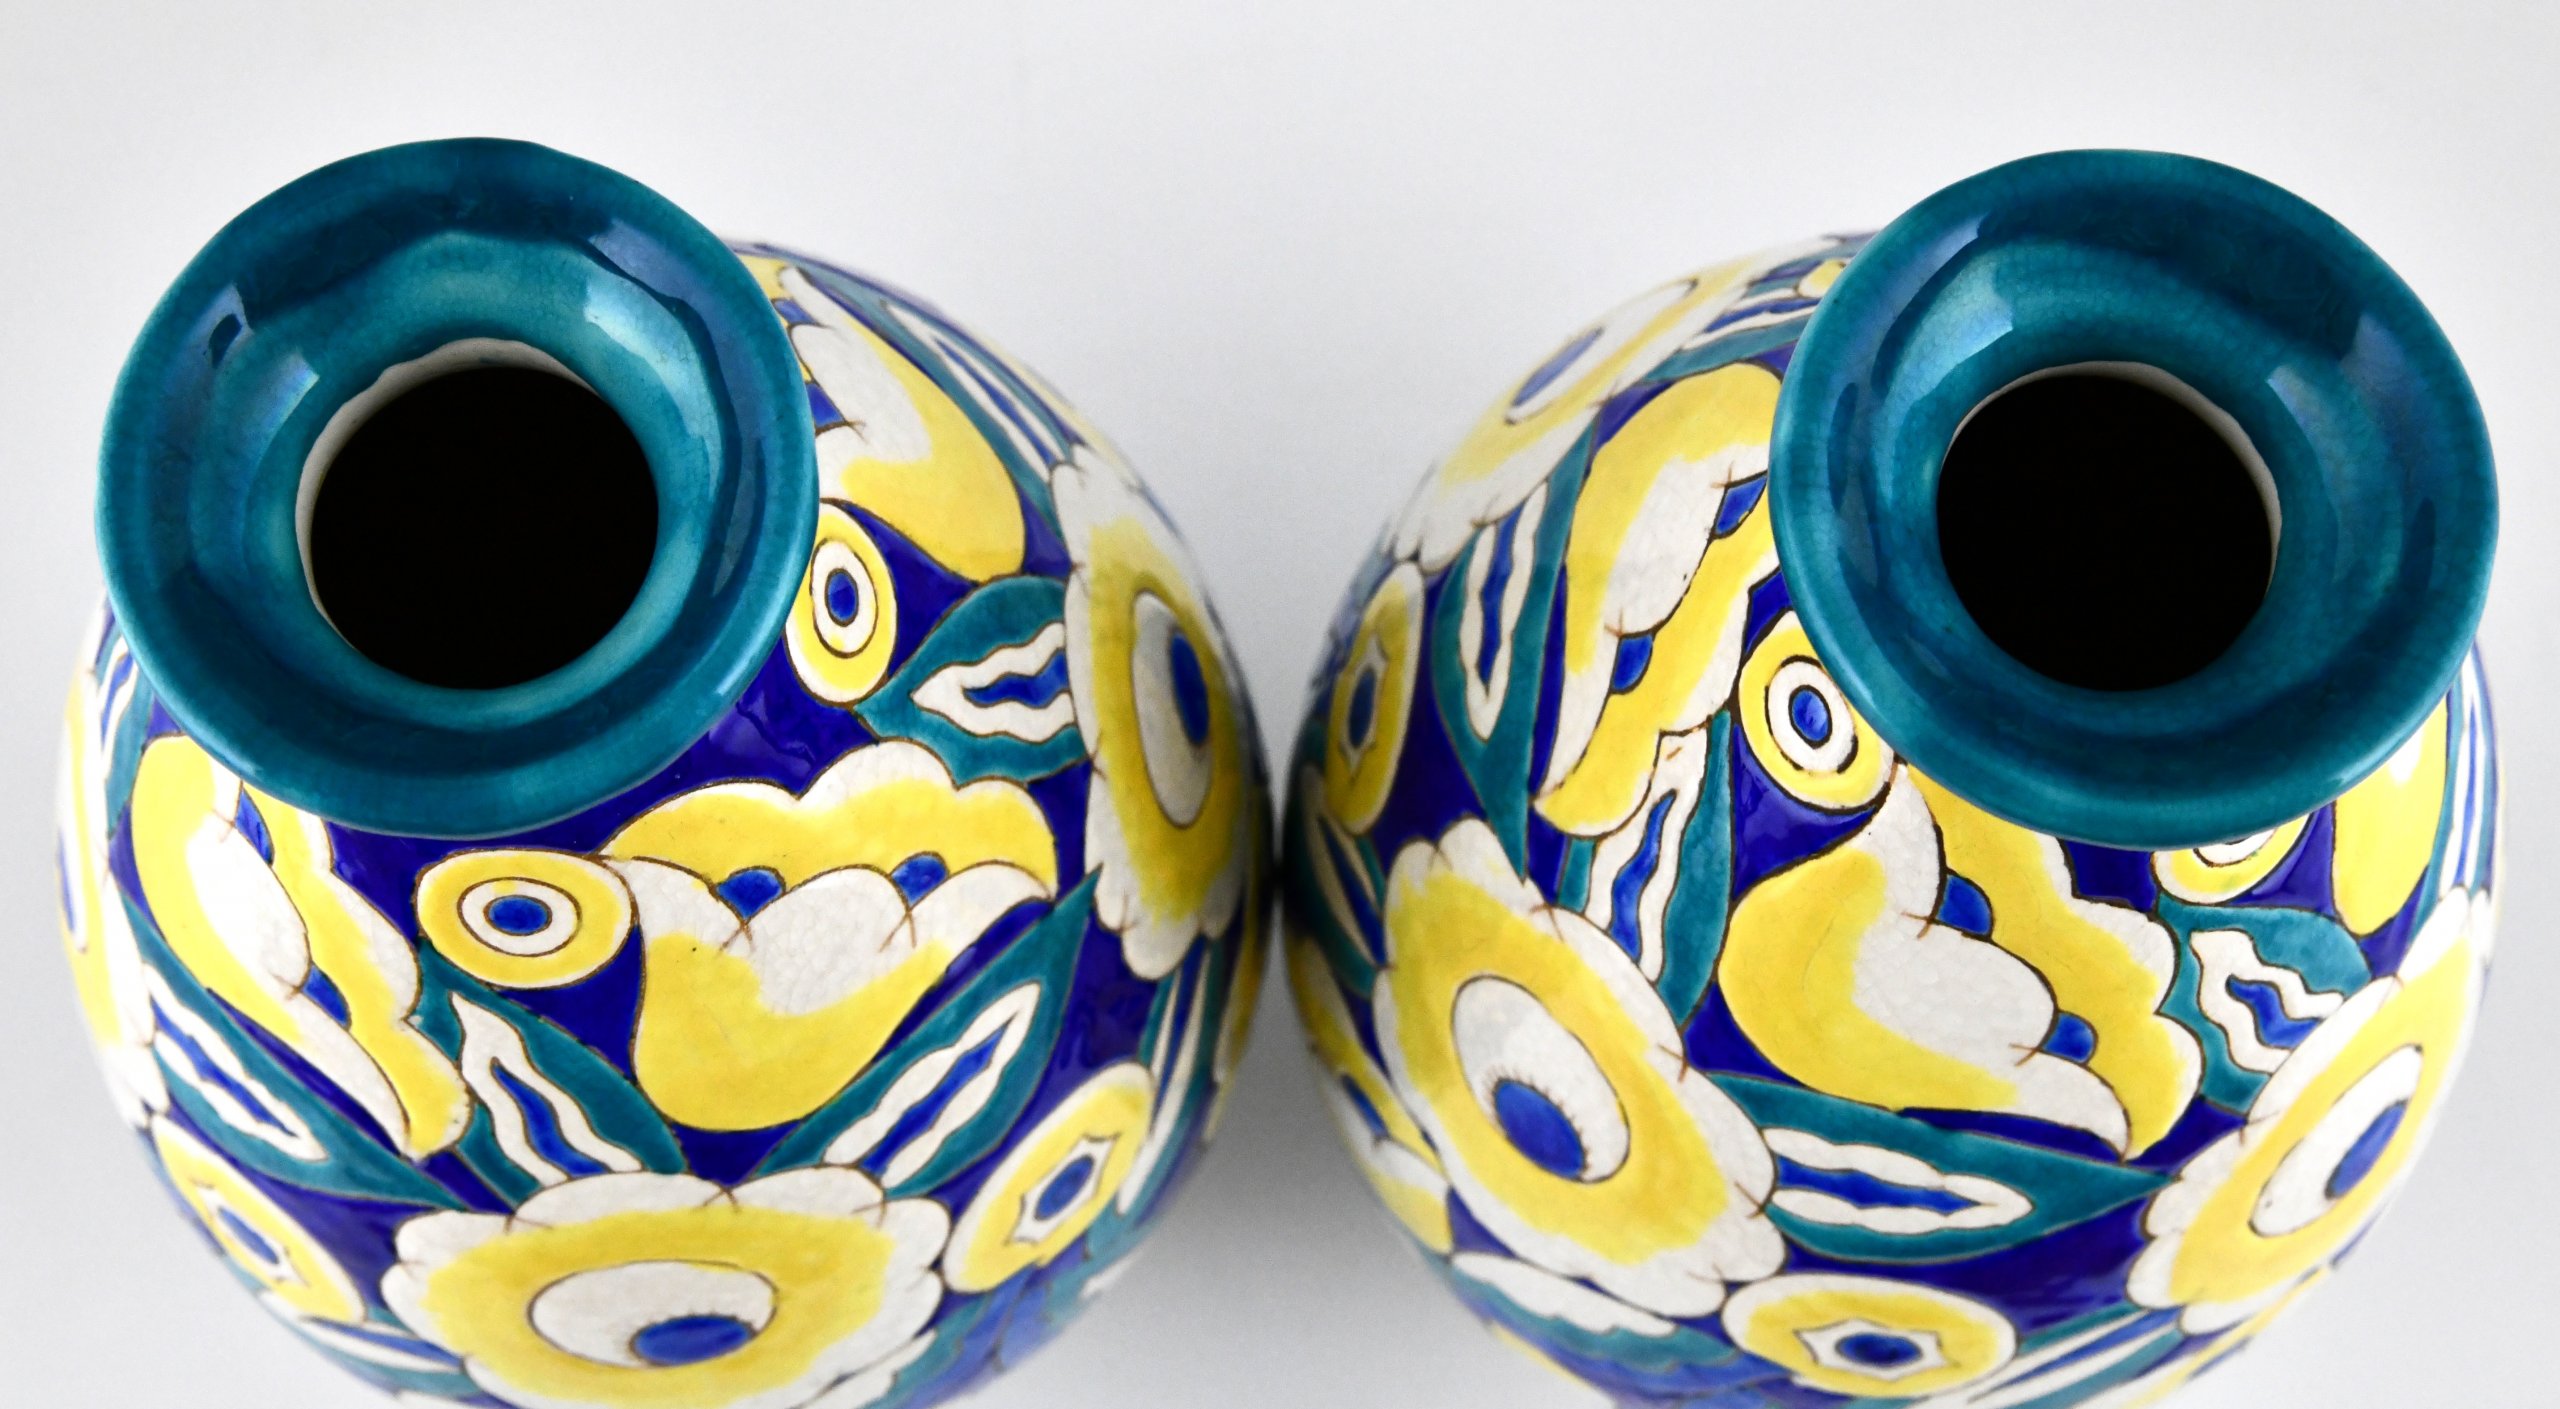 Pair of Art Deco ceramic vases with flowers.